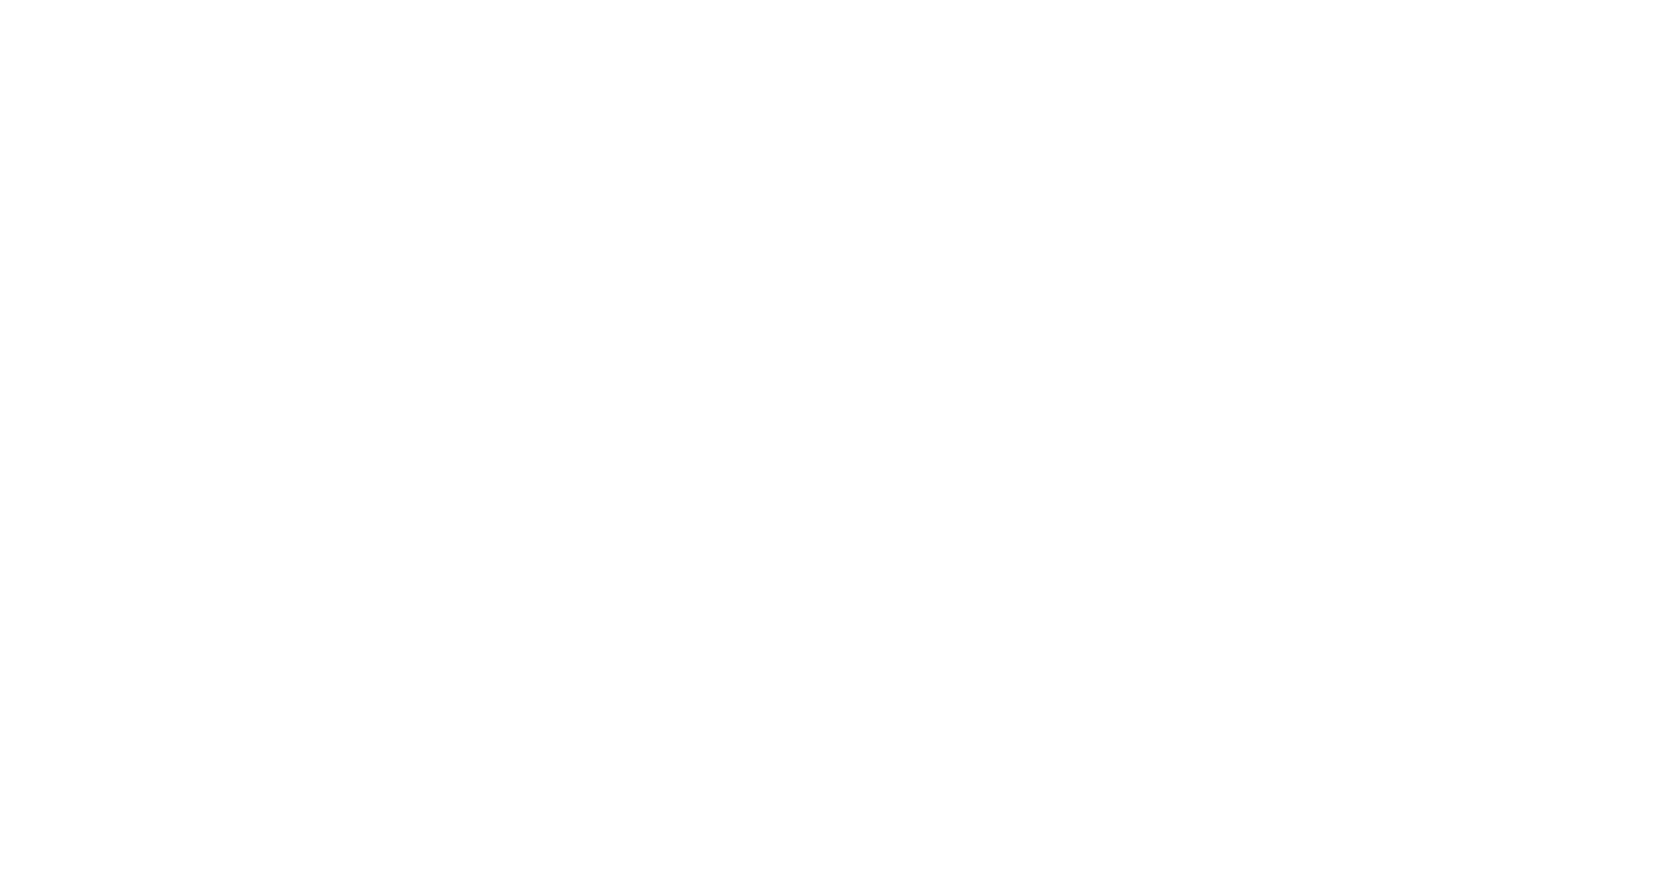 UTA MediaLink